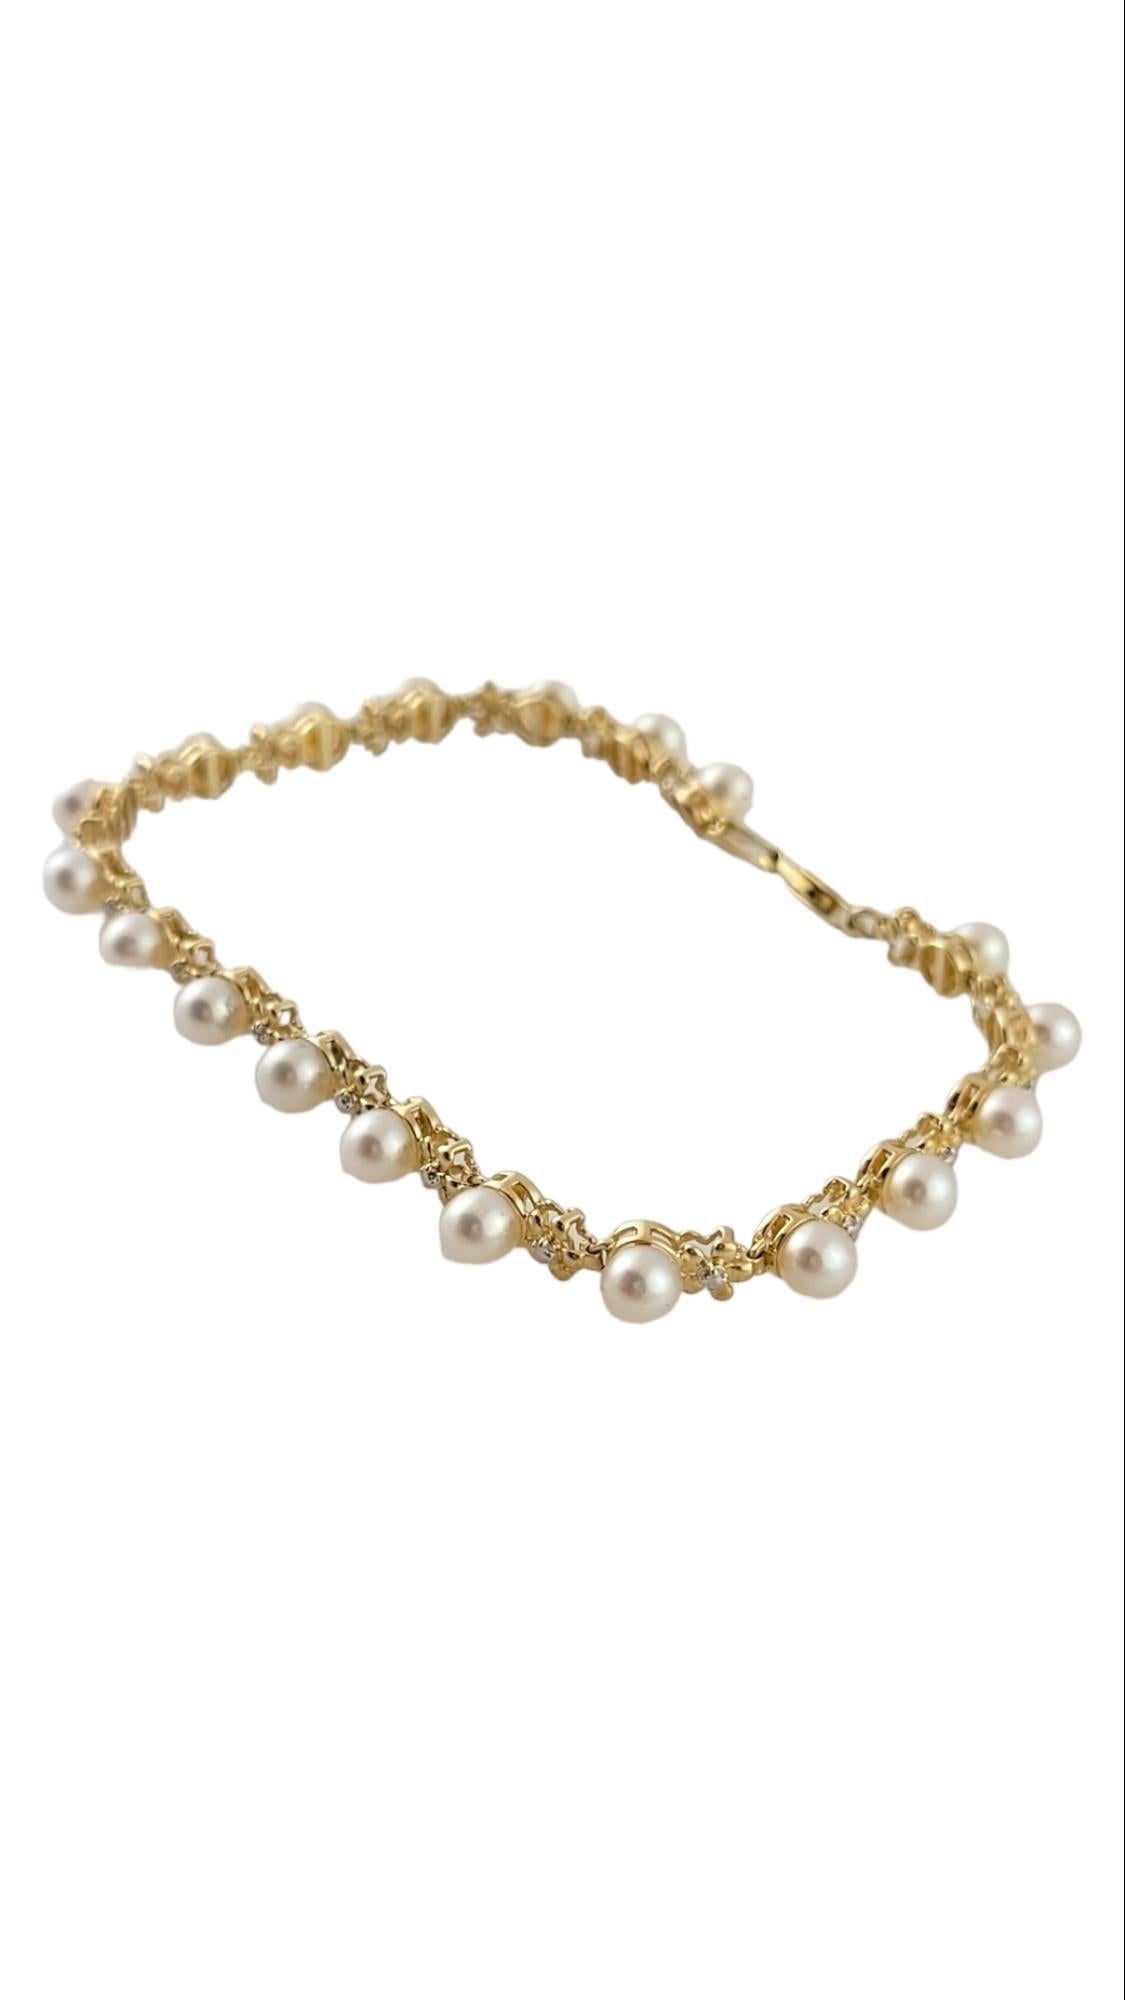 14K Gelbgold Perlen-Tennisarmband

Dieses wunderschöne Tennisarmband ist aus 14 Karat Gelbgold gefertigt und mit 19 wunderschönen Perlen besetzt!

Perlen jeweils ca. 4,4 mm 

Größe des Armbands: 7